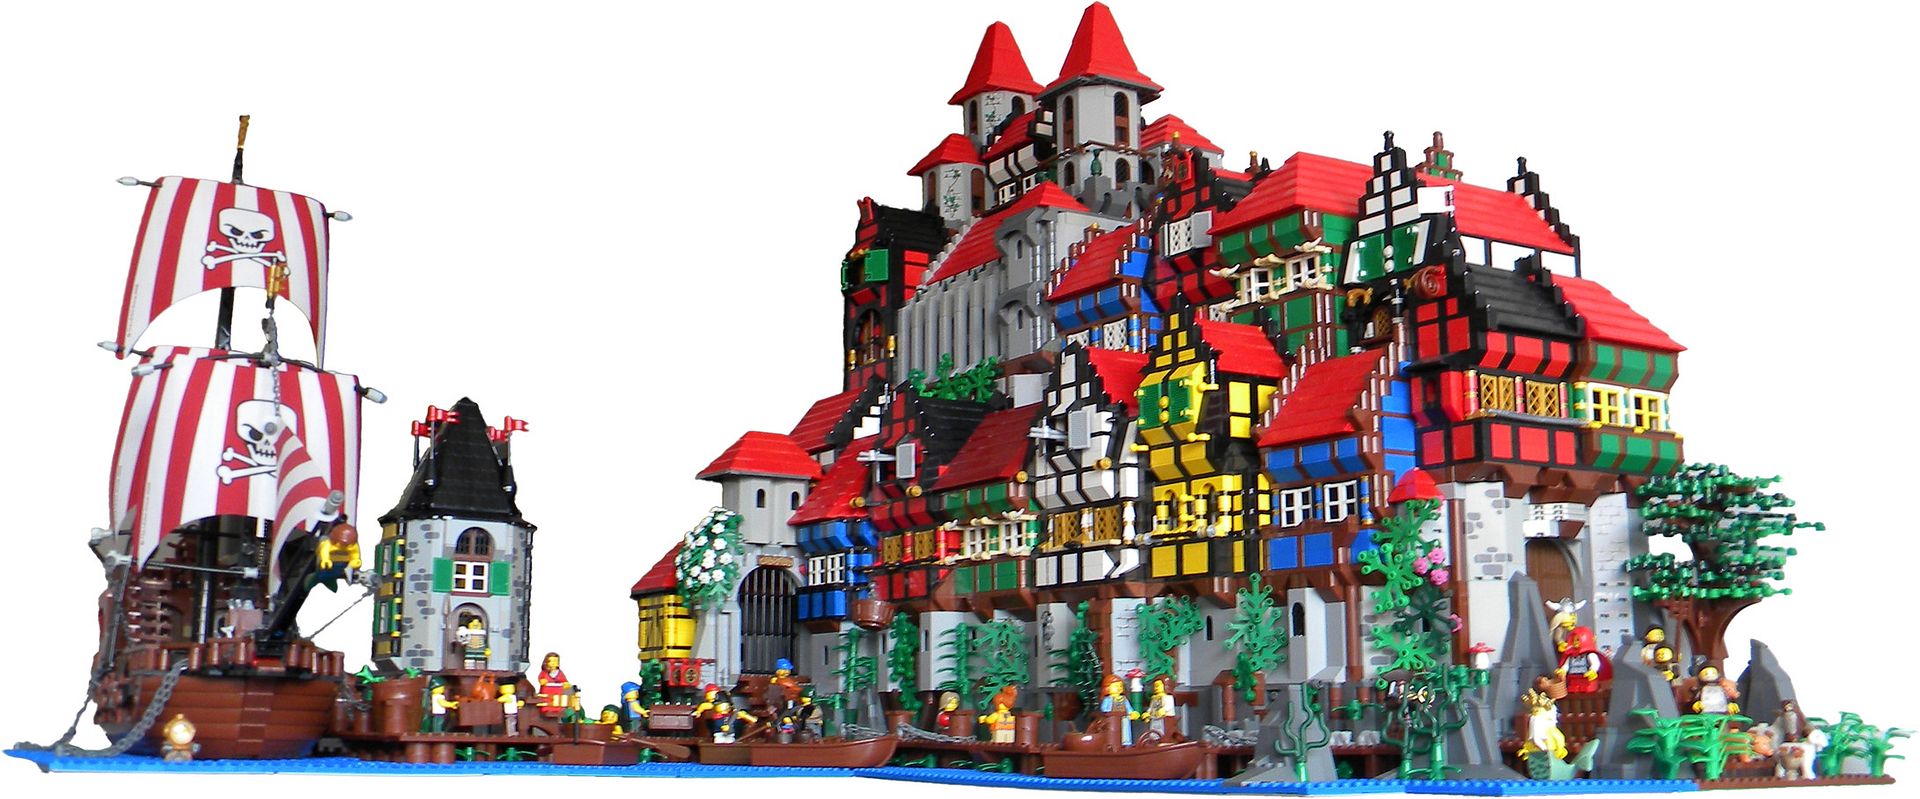 Lego : les adultes casent des briques – Libération